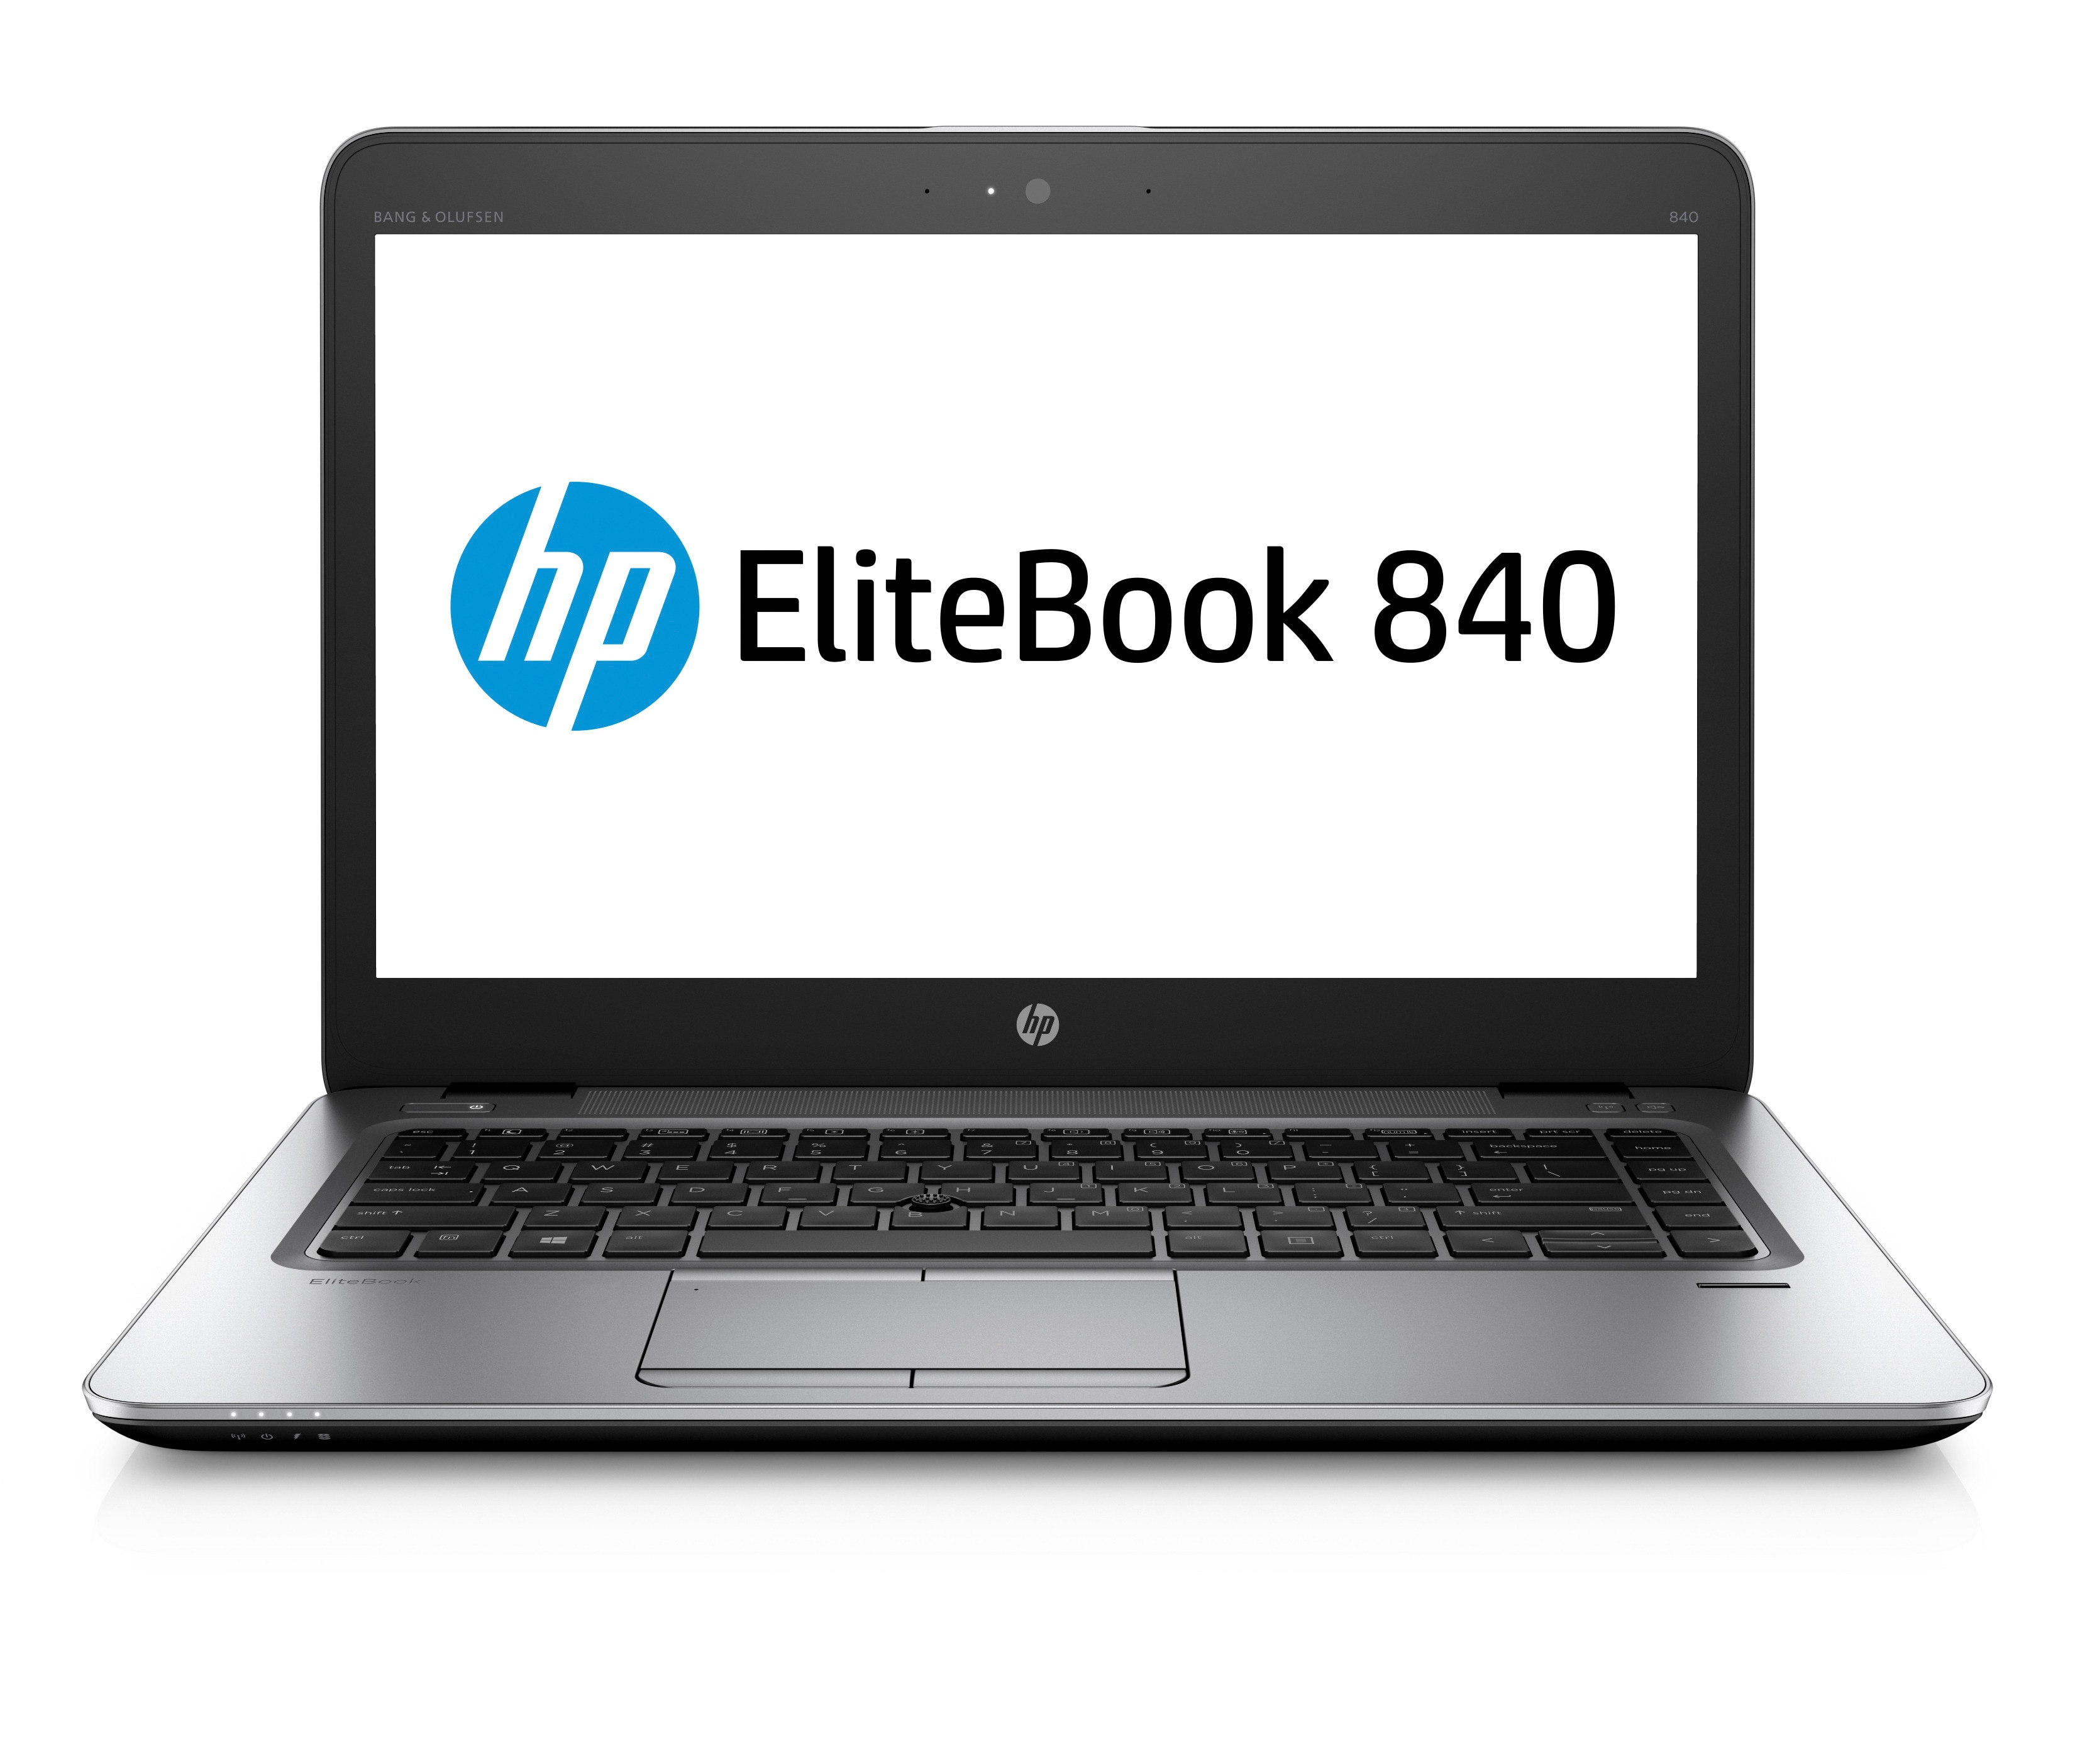 HP EliteBook 840 G4 Touch screen Laptop Core i7 7th Gen 8GB RAM 256GB SSD Win 104